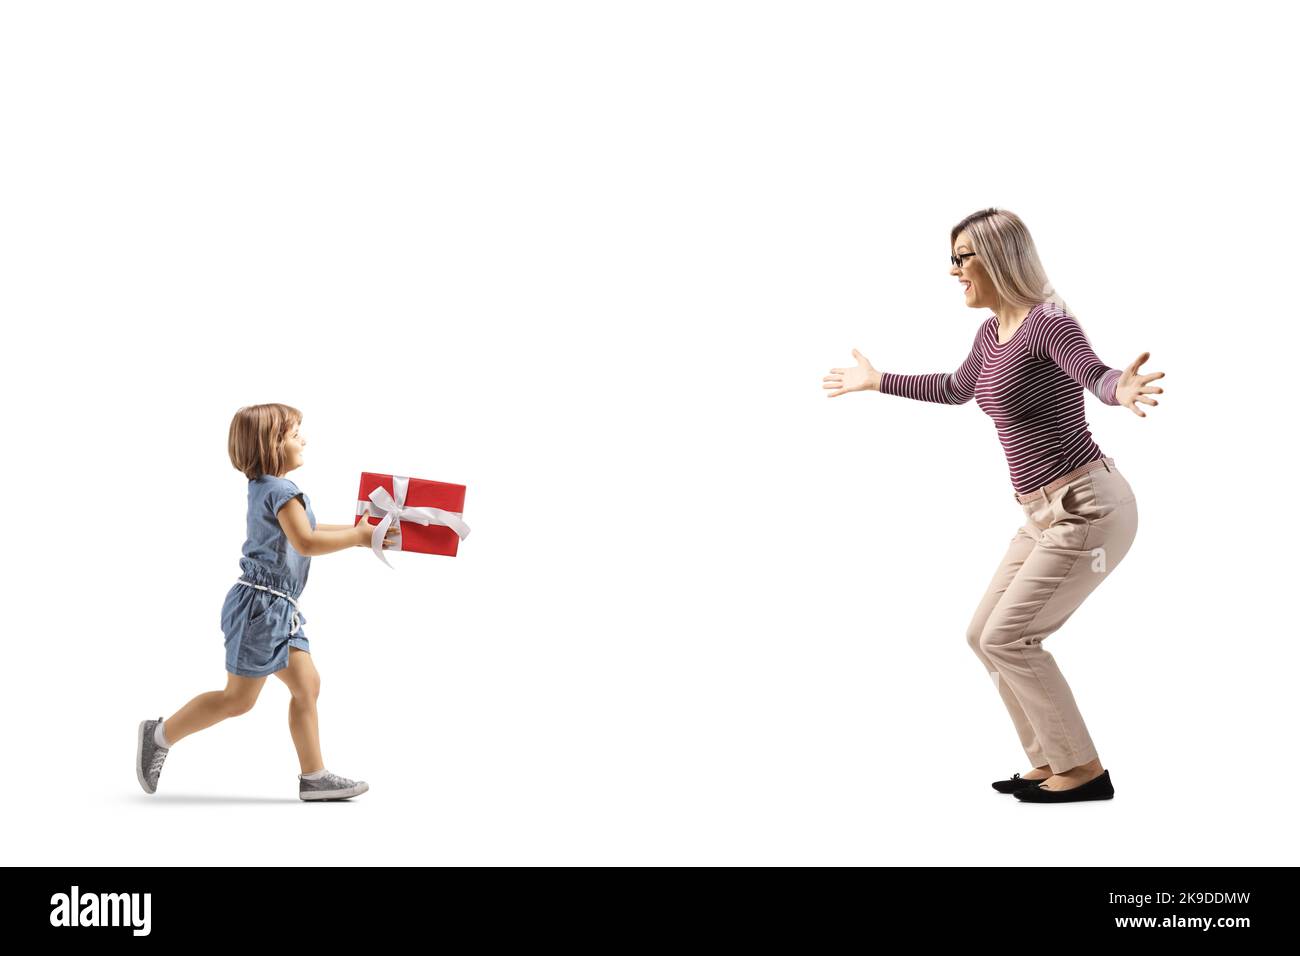 Profilo a tutta lunghezza girato di una bambina che corre verso una donna e che porta un presente isolato su sfondo bianco Foto Stock